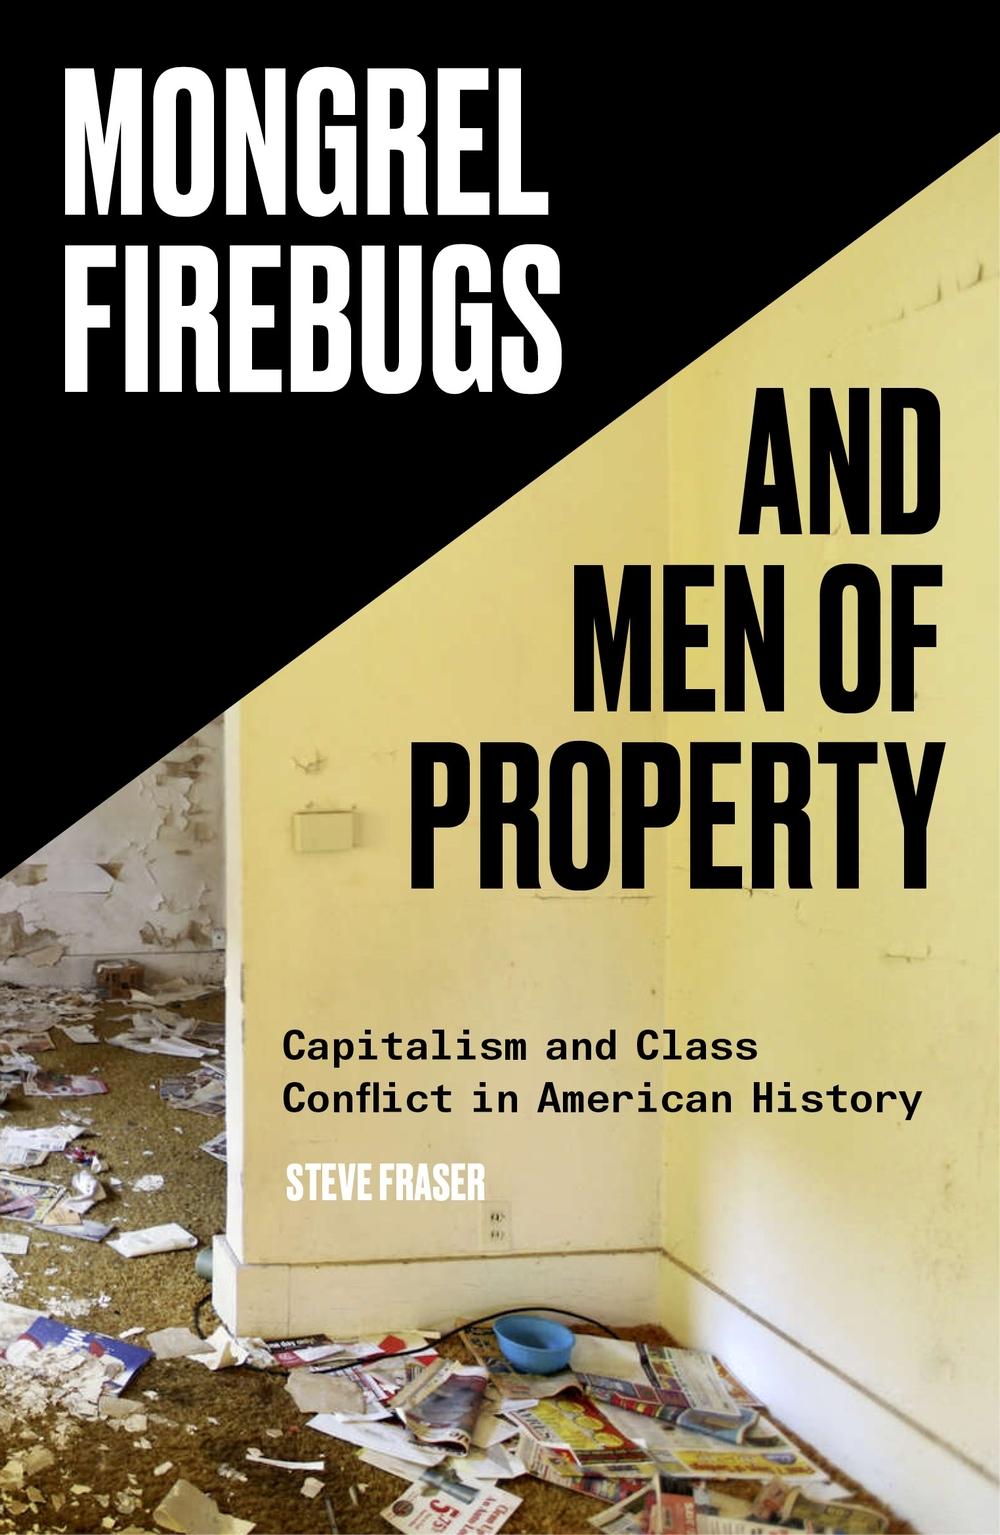 Mongrel Firebugs and Men of Property - Steve Fraser